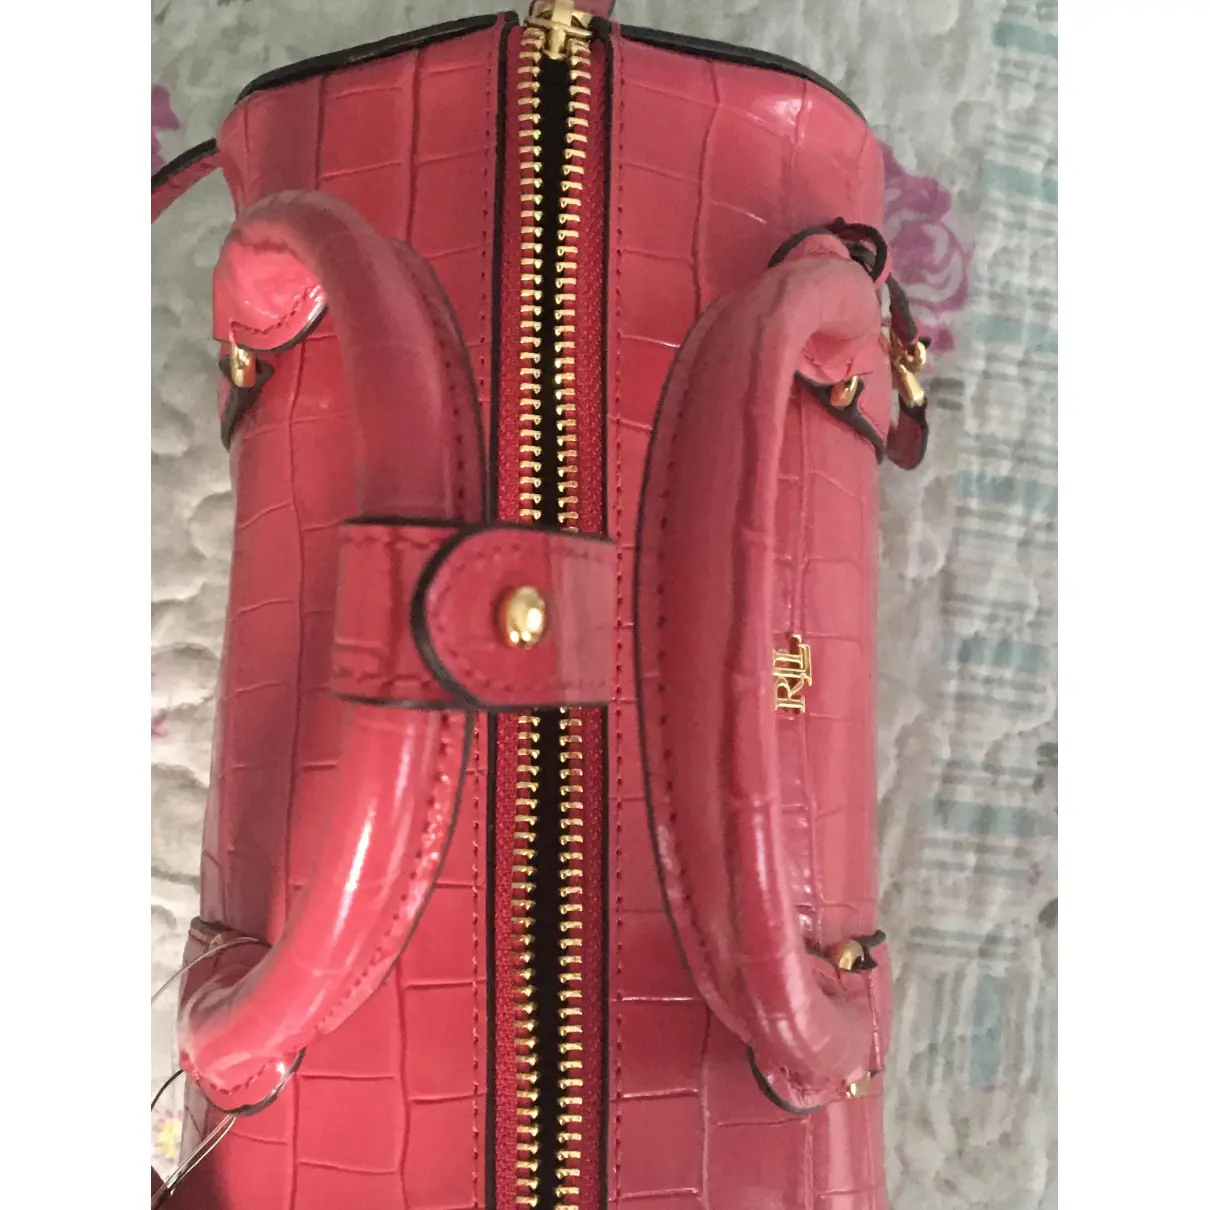 Leather satchel Lauren Ralph Lauren